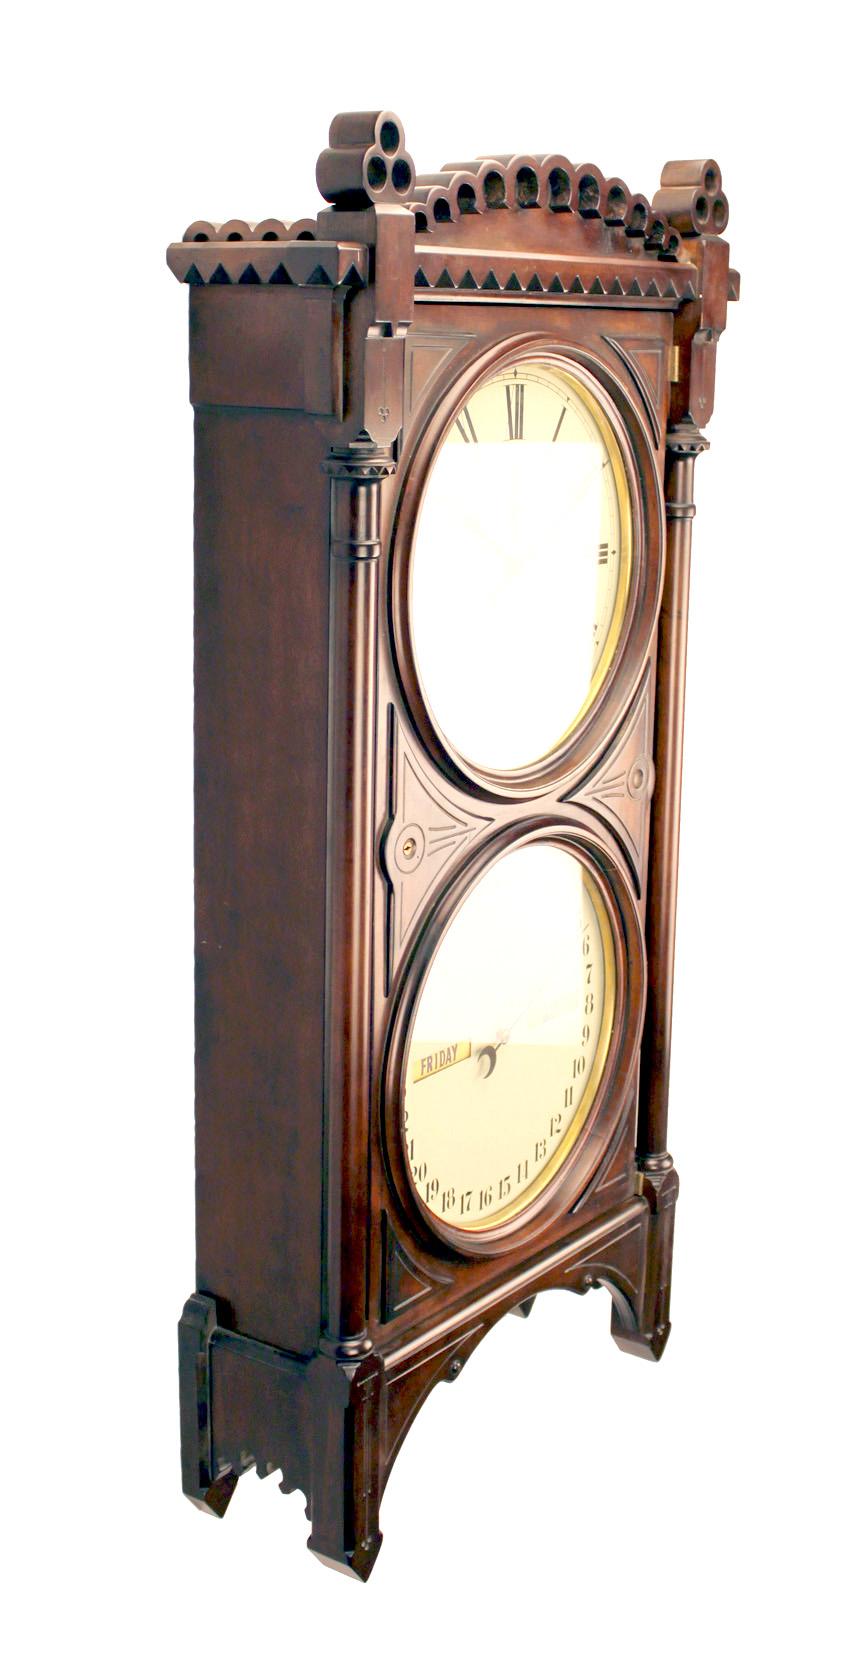  HORLOGE DE BUREAU SETH THOMAS STYLE CALENDRIER REGULATEUR No. 5

Voici une belle horloge murale calendrier régulateur de bureau. L'étui a été récemment fabriqué en bois dur massif et en finition noyer antique. L'ensemble de l'horloge pèse environ